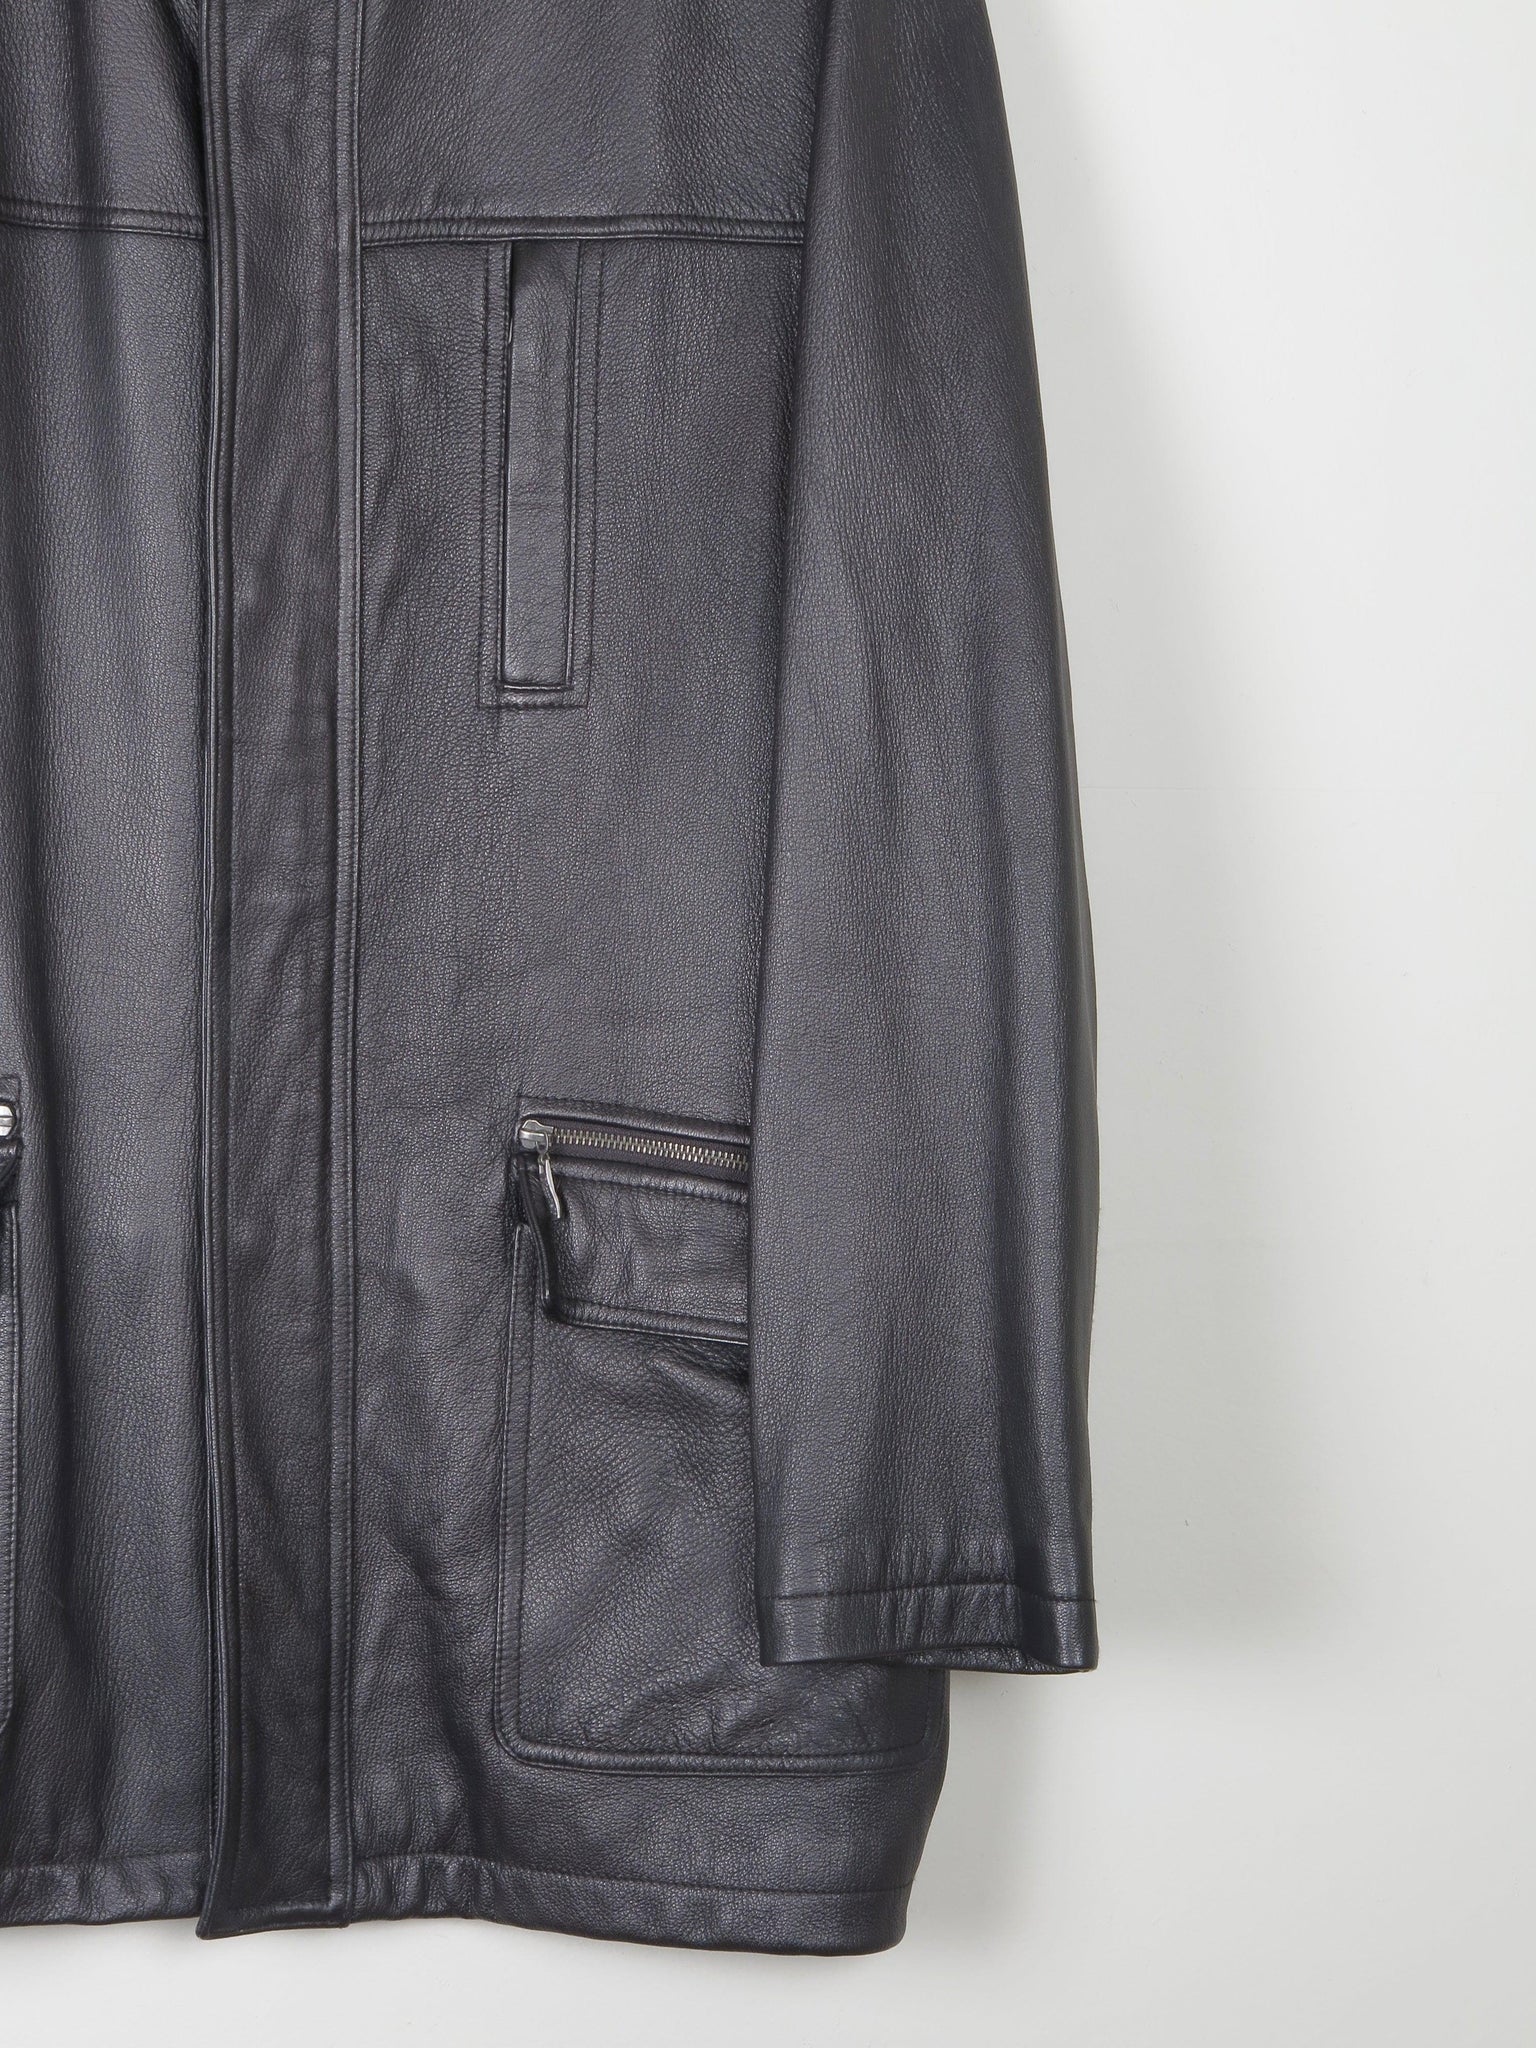 Men’s Black Leather Parka Style Long Jacket L - The Harlequin